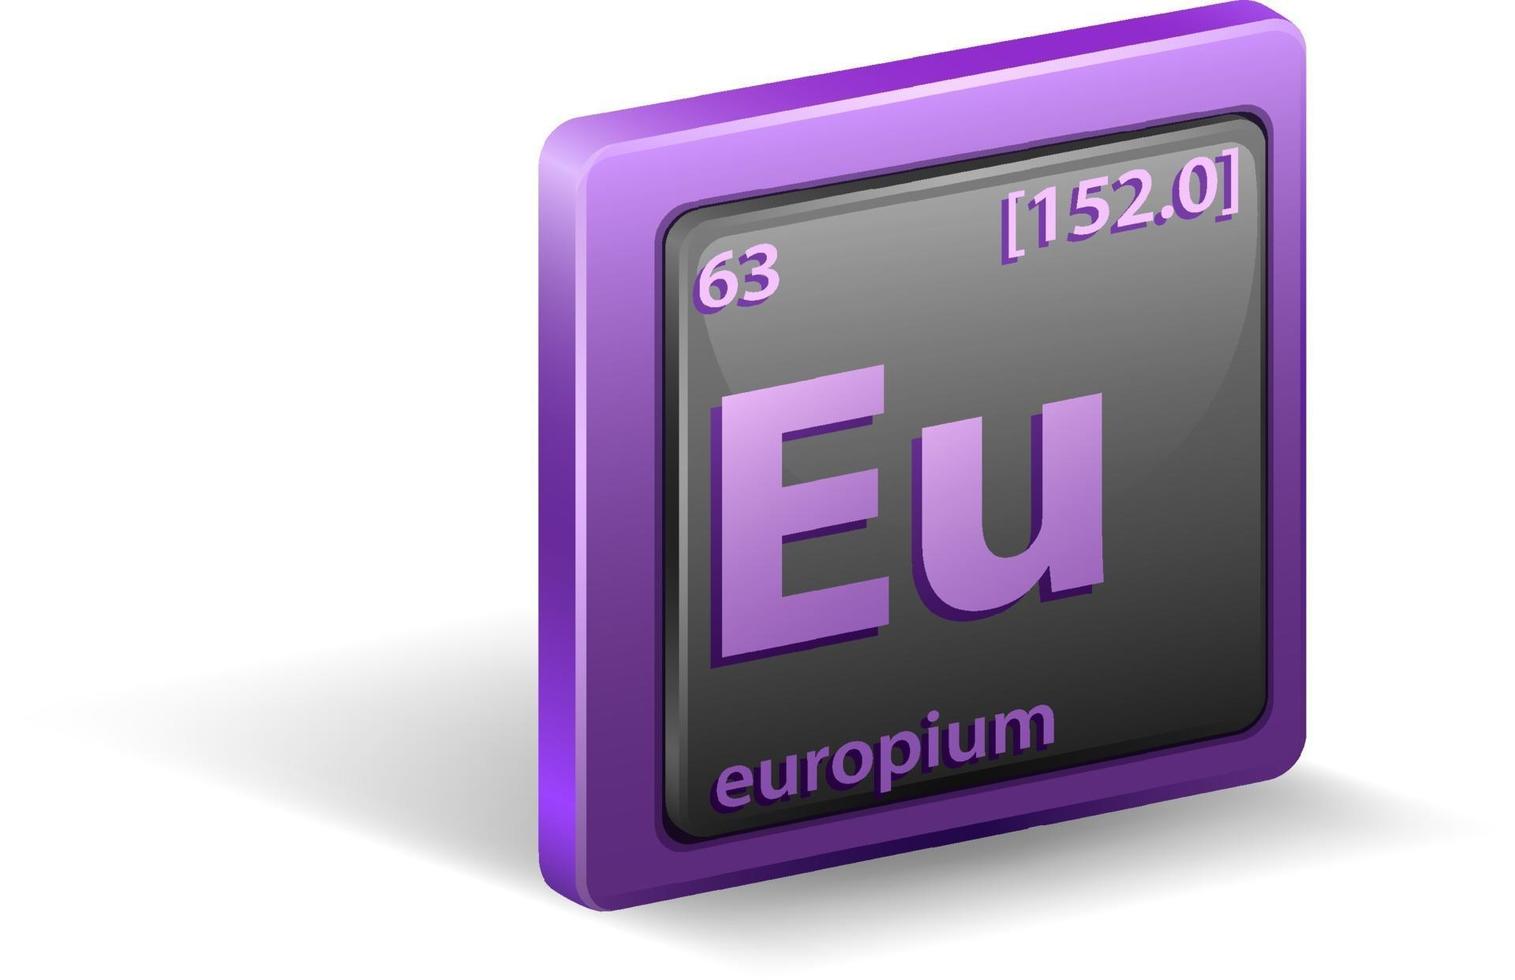 élément chimique de l'europium. symbole chimique avec numéro atomique et masse atomique. vecteur